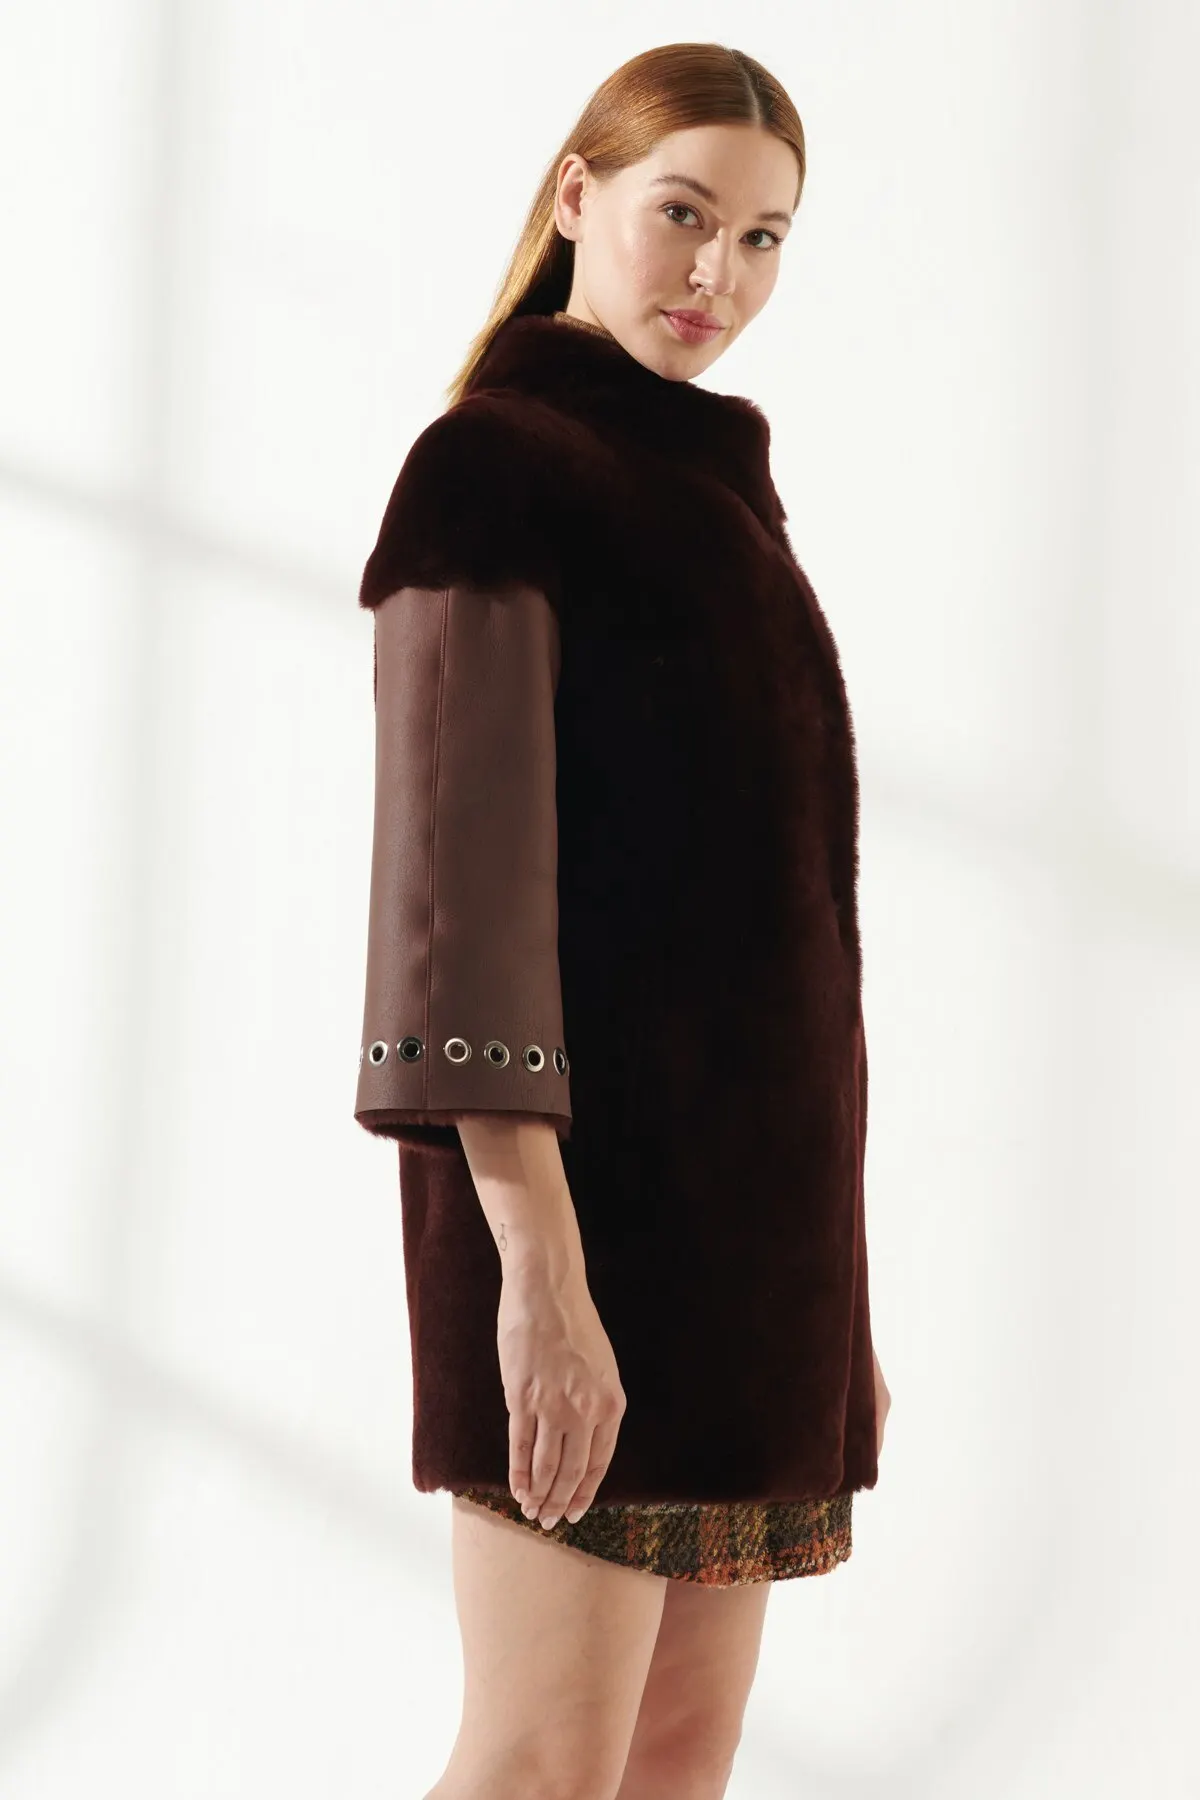 Women's Fur Leather Jacket Winter Warm Coat Design Clothing Products Classic Plush Coat Turkiyede Produced Long Parka Fashion enlarge